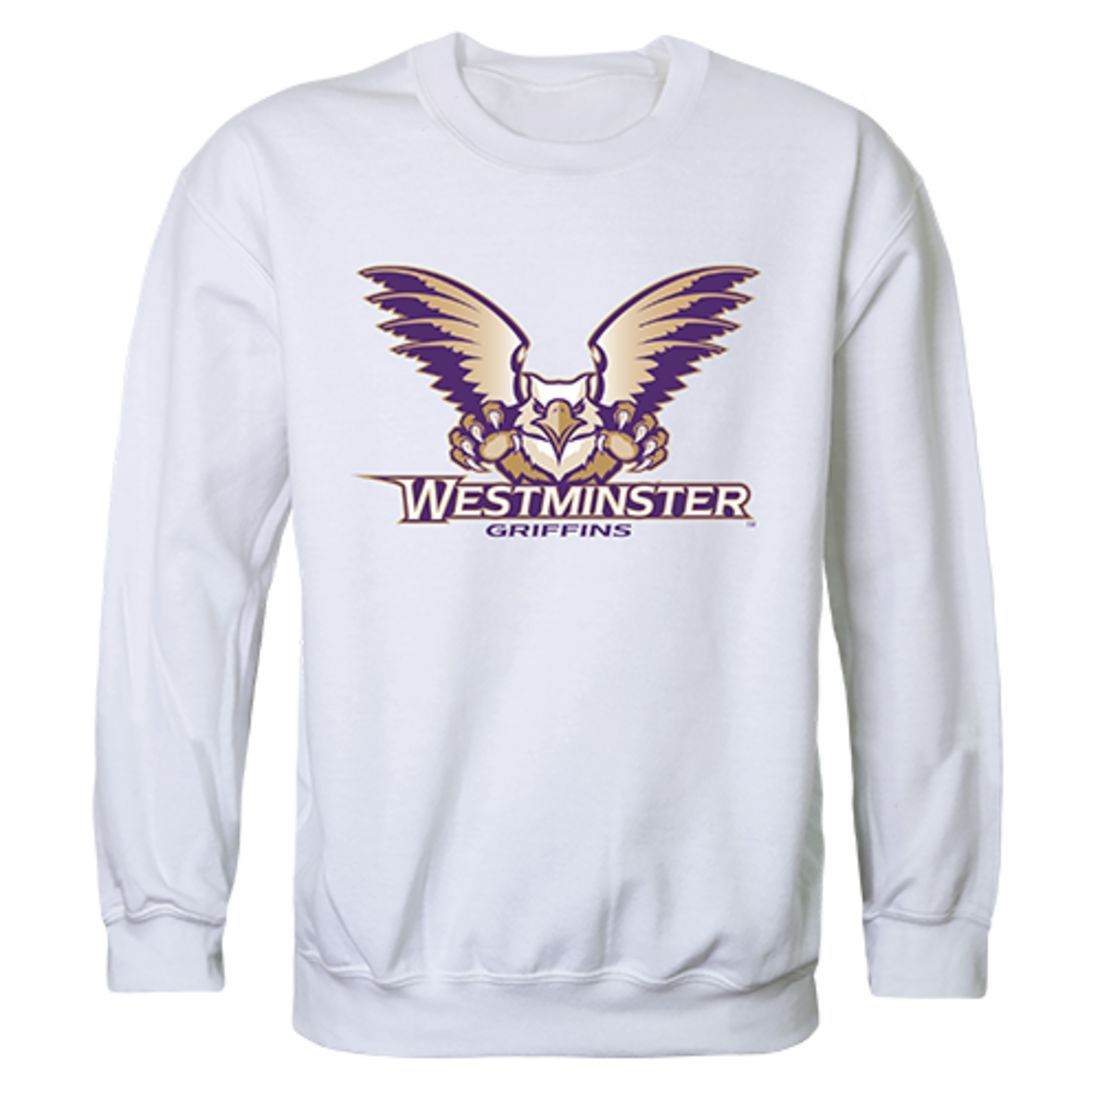 Westminster College Campus Crewneck Pullover Sweatshirt Sweater White-Campus-Wardrobe